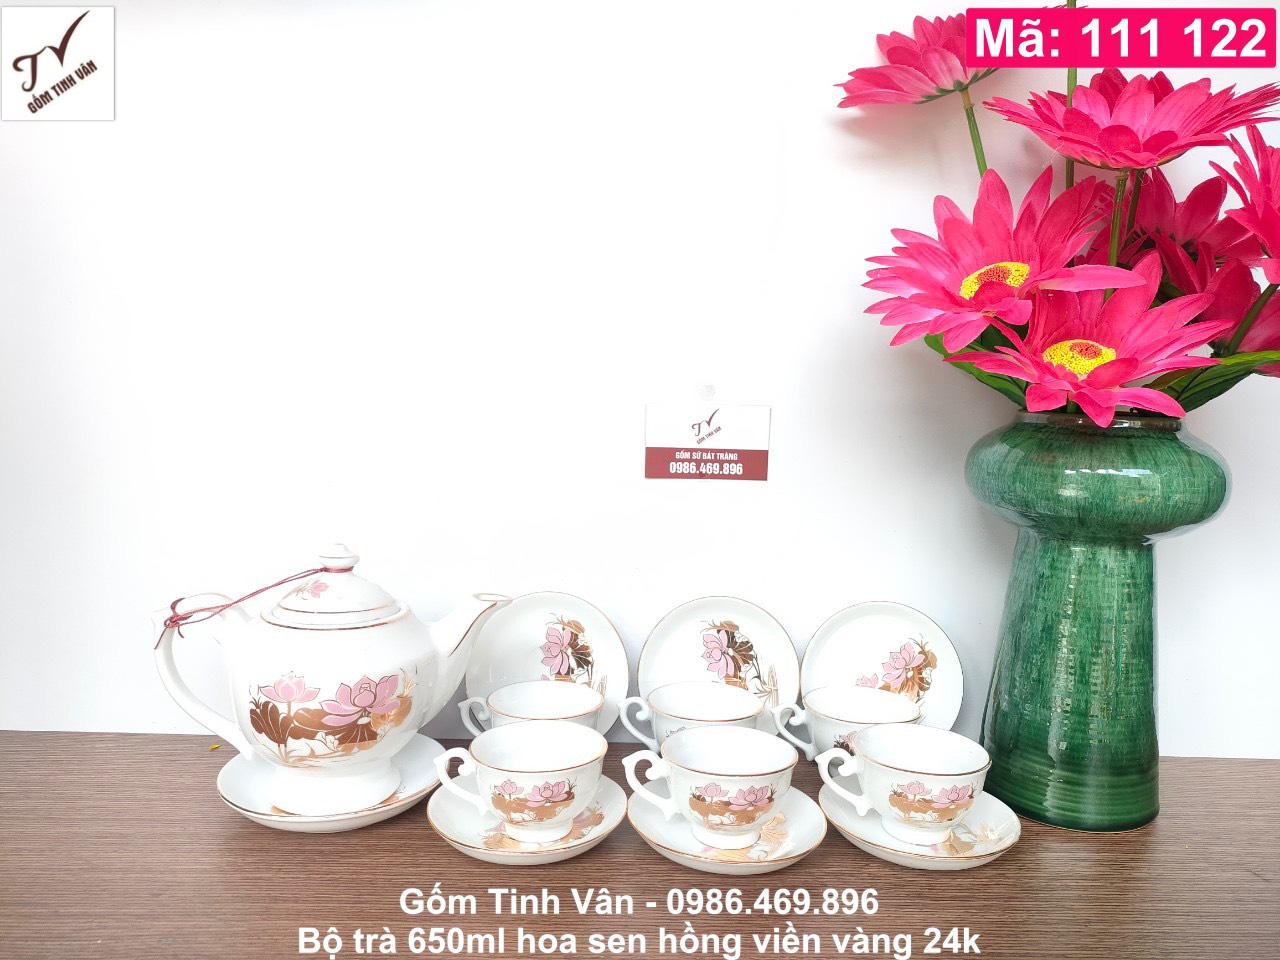 Bộ bình trà men trắng, dáng đèn thần, mã 111122, vẽ hoa sen hồng viền vàng 24k, 1 ấm 650ml, 6 chén, 7 đĩa, gốm bát tràng